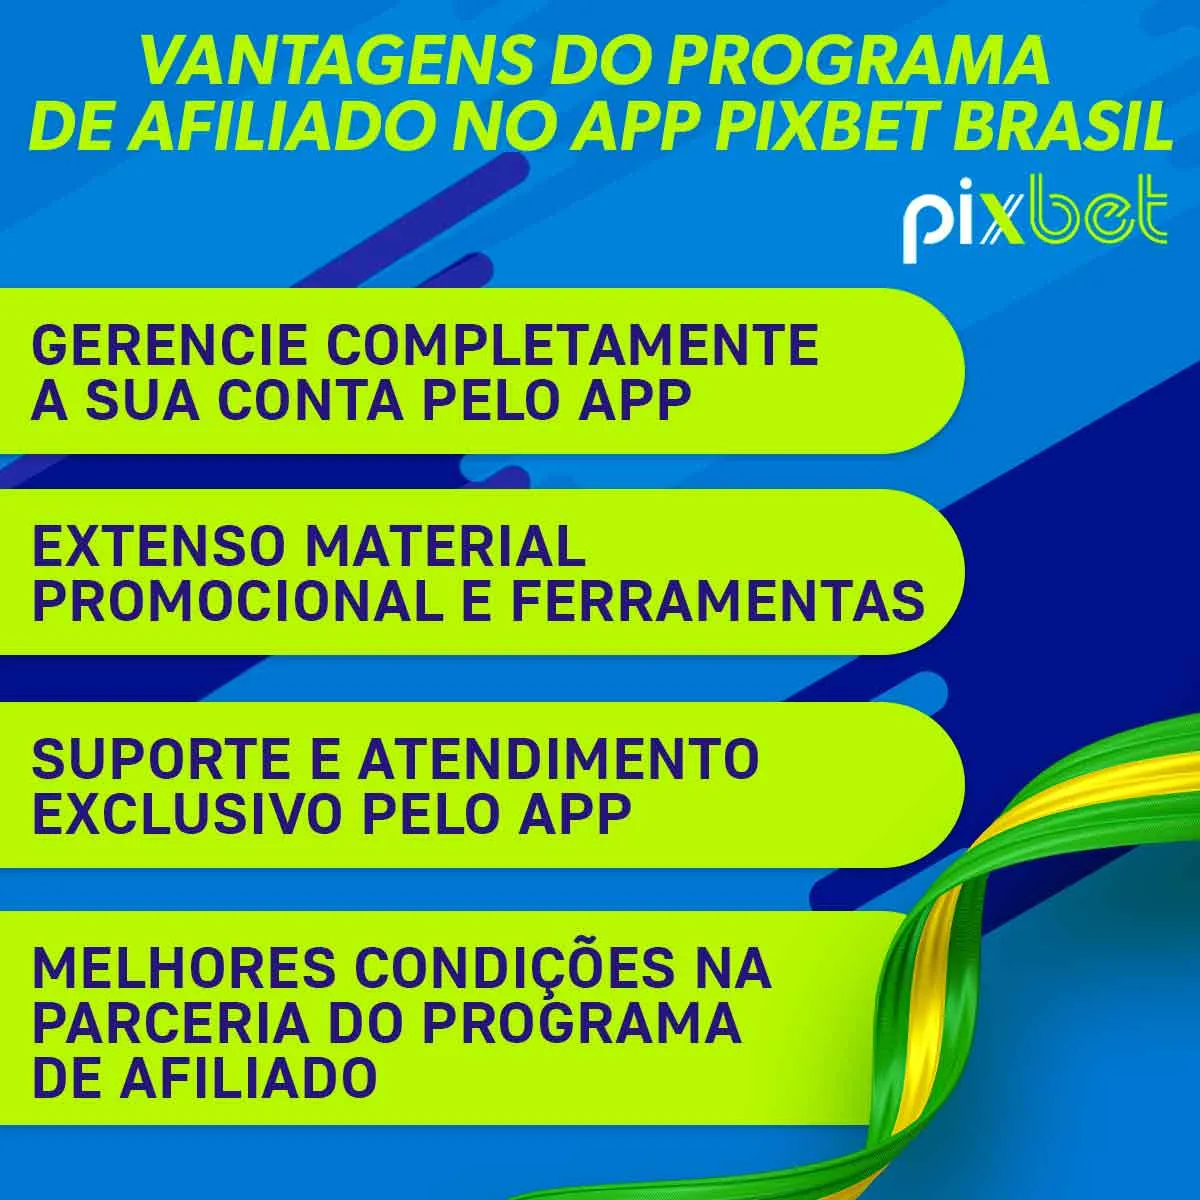 Vantagens do programa de afiliado no aplicativo Pixbet Brasil